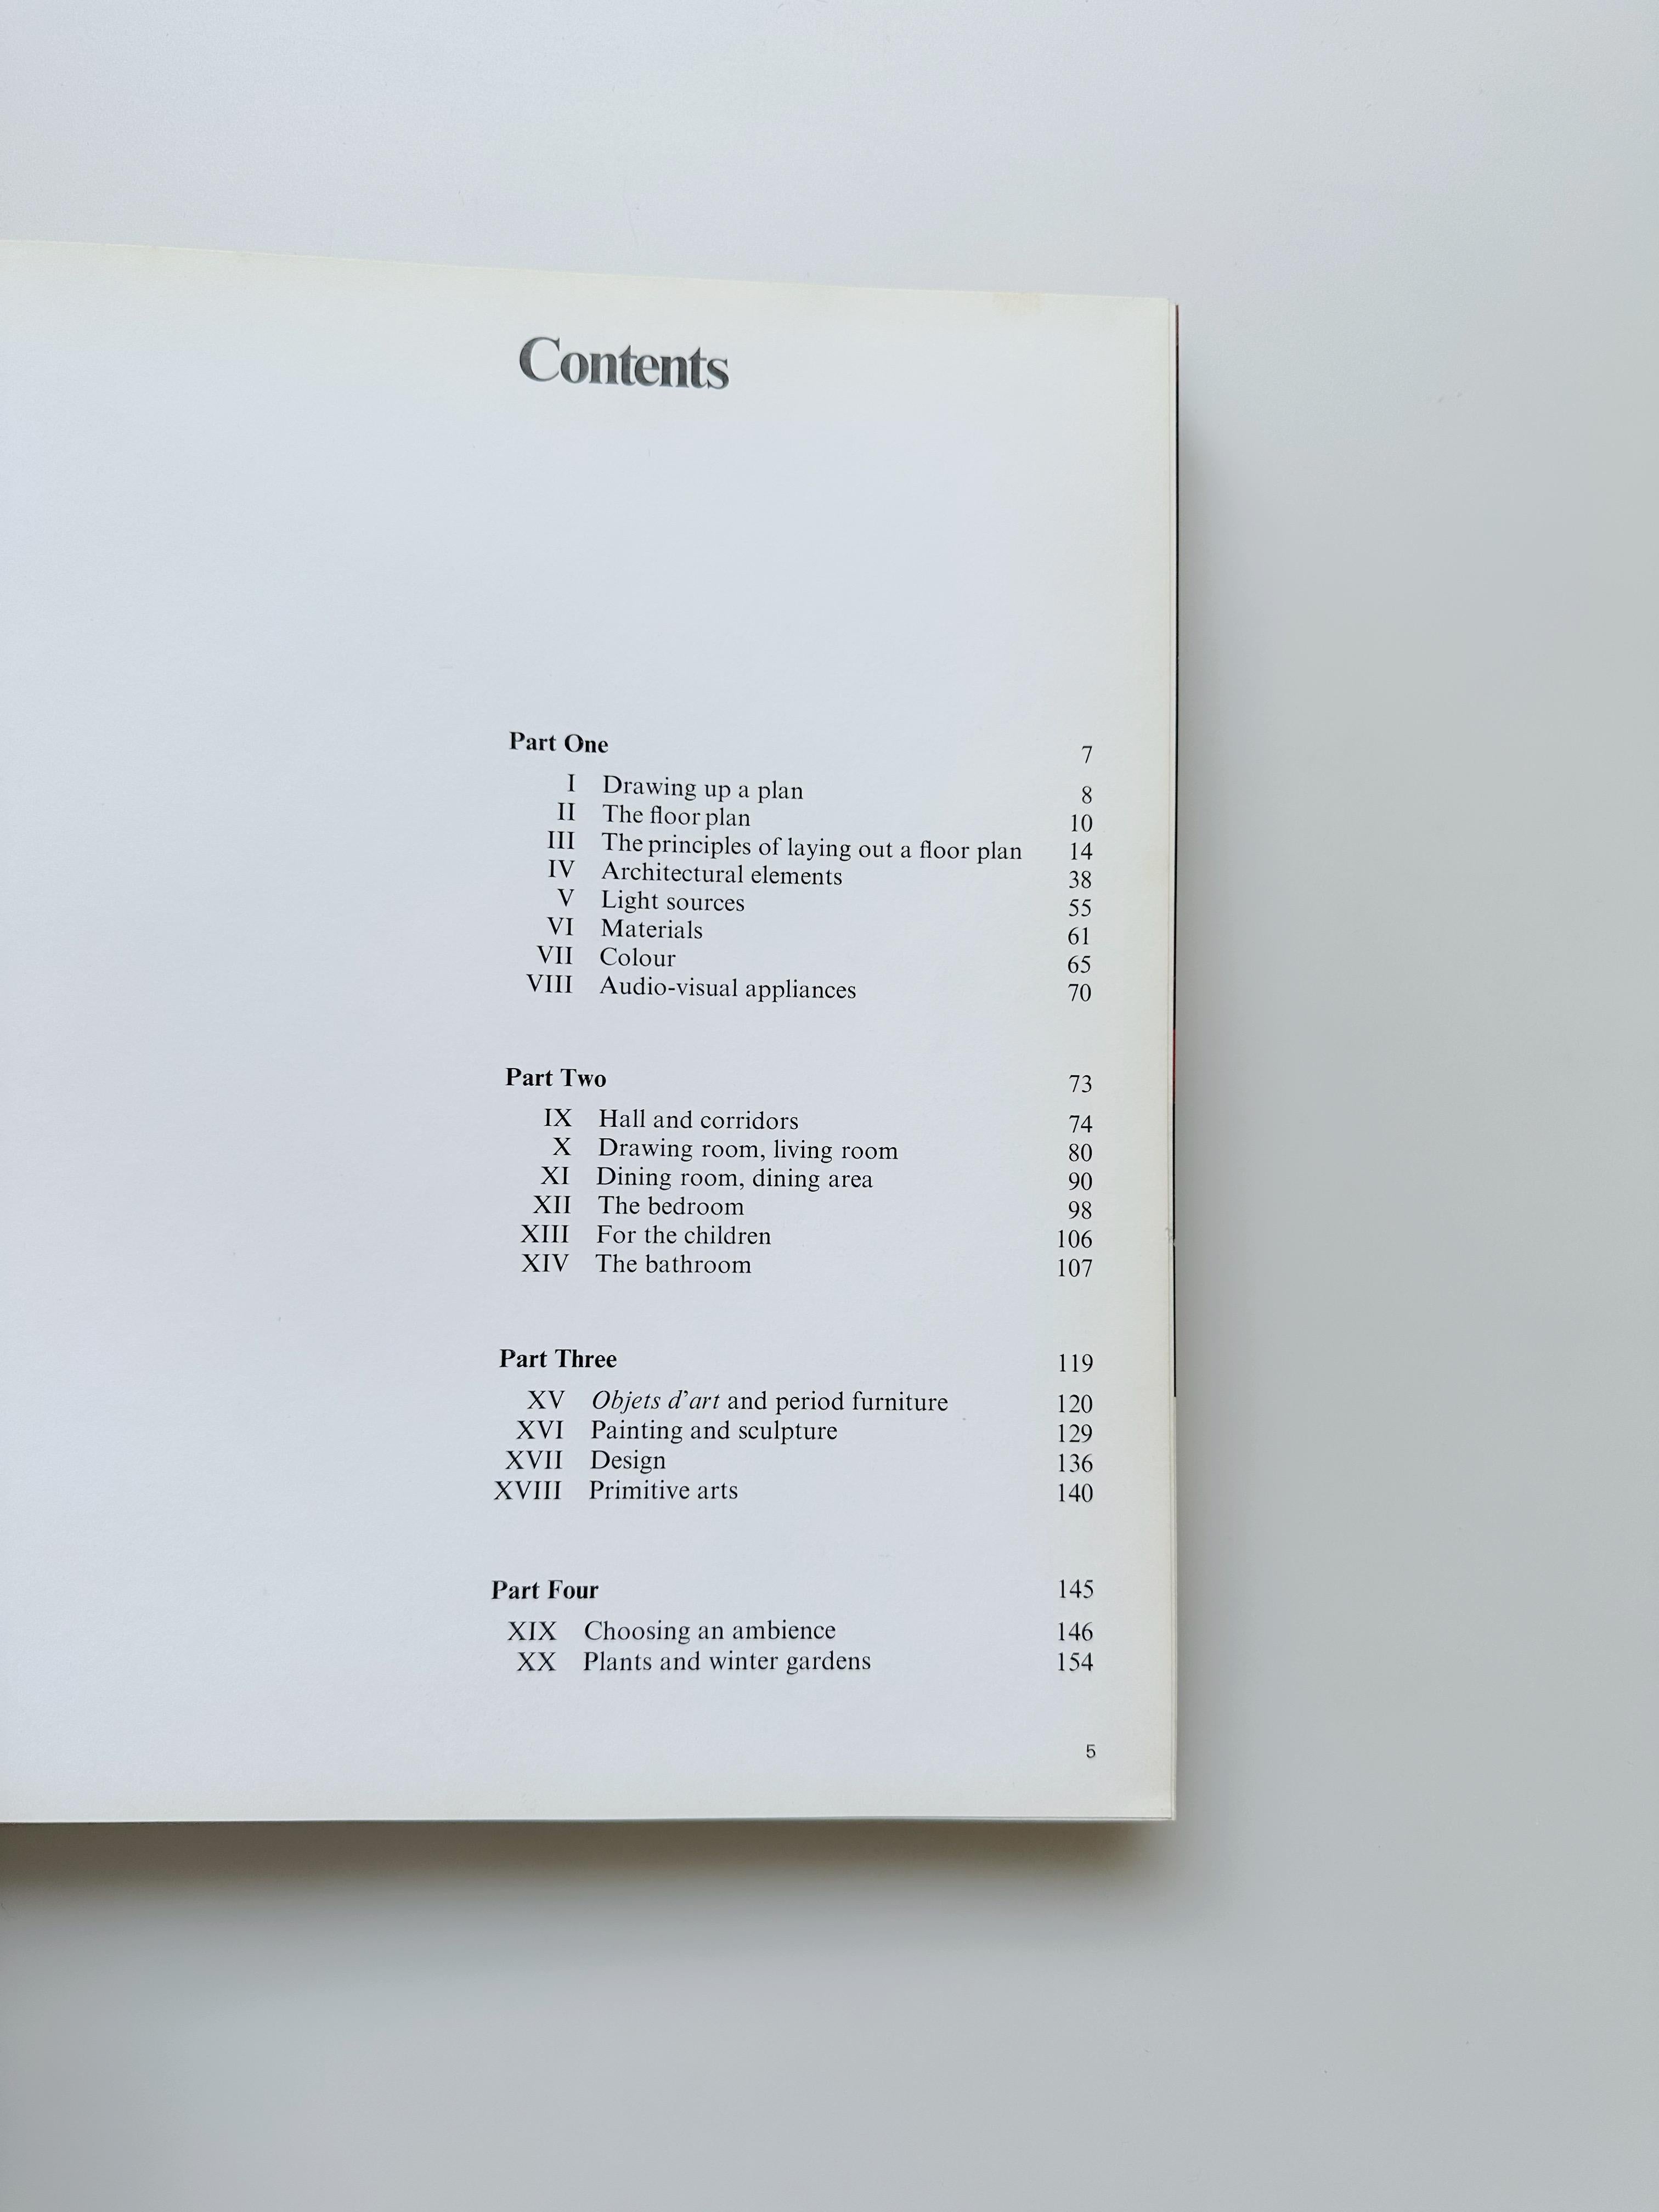 Innenarchitektur und Dekoration, Alain Demachy, 1974

Fester Einband, Schutzumschlag

//

10 x 10.5

162 Seiten

//

*Akzeptabler Zustand, ein Stück ist auf der zweiten Seite ausgeschnitten, einige Seiten lösen sich aus der Bindung. Seltenes Buch.